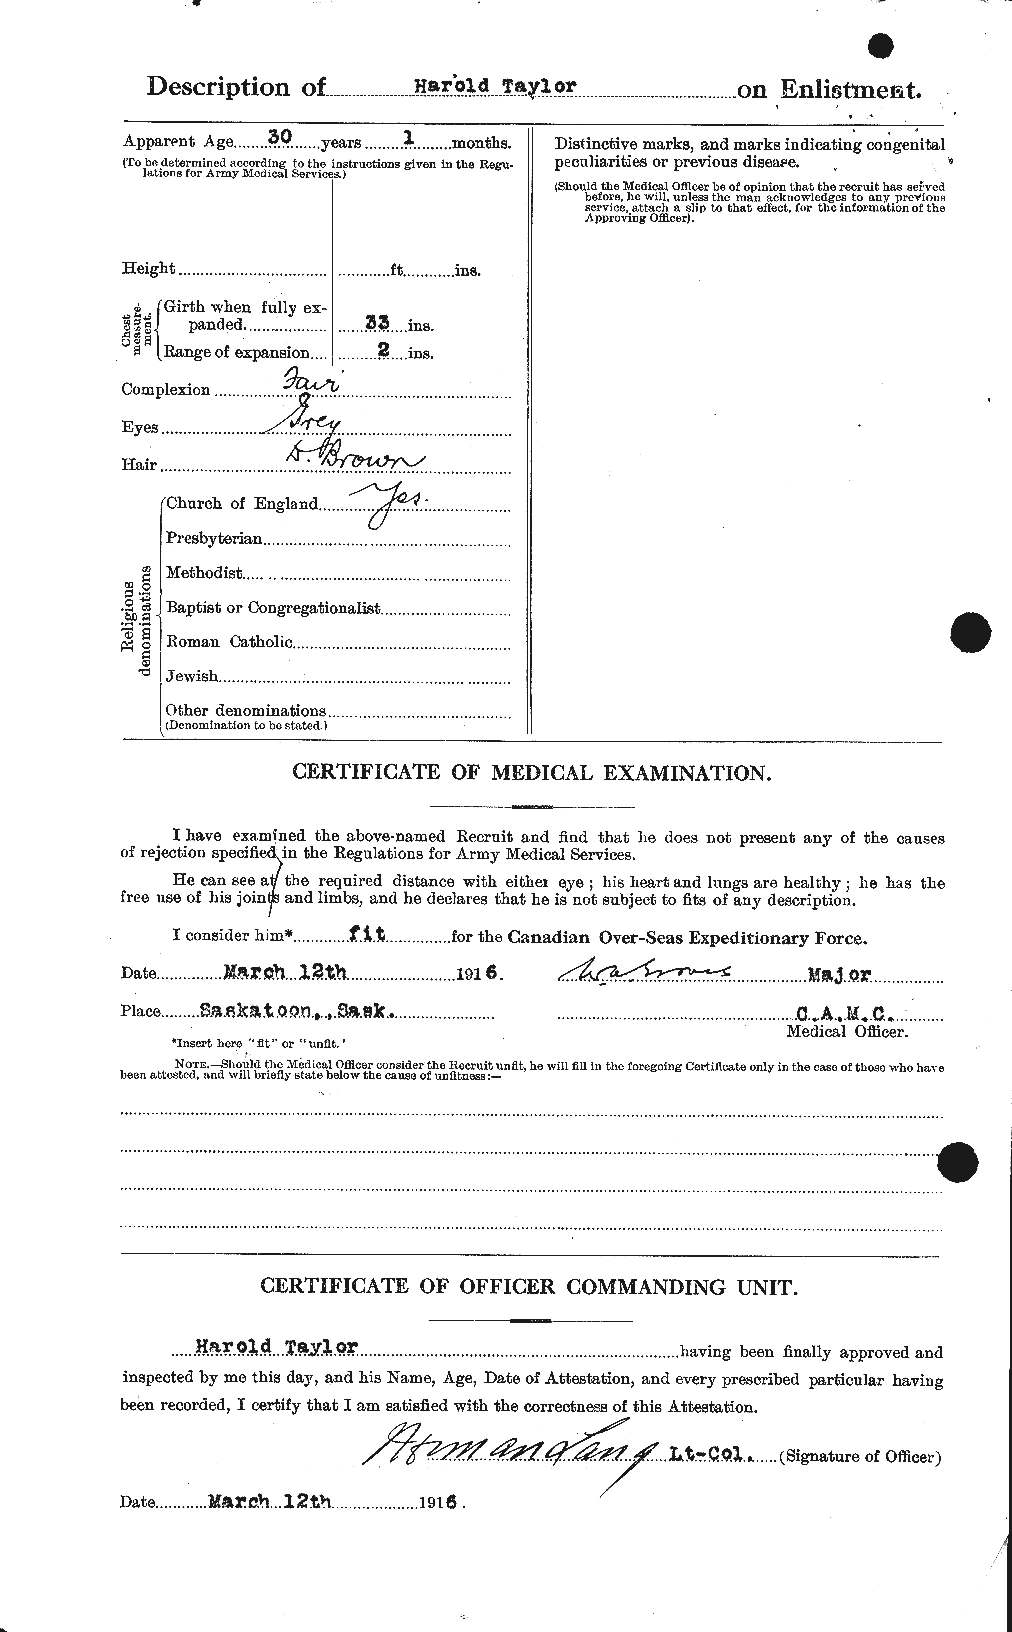 Dossiers du Personnel de la Première Guerre mondiale - CEC 626404b